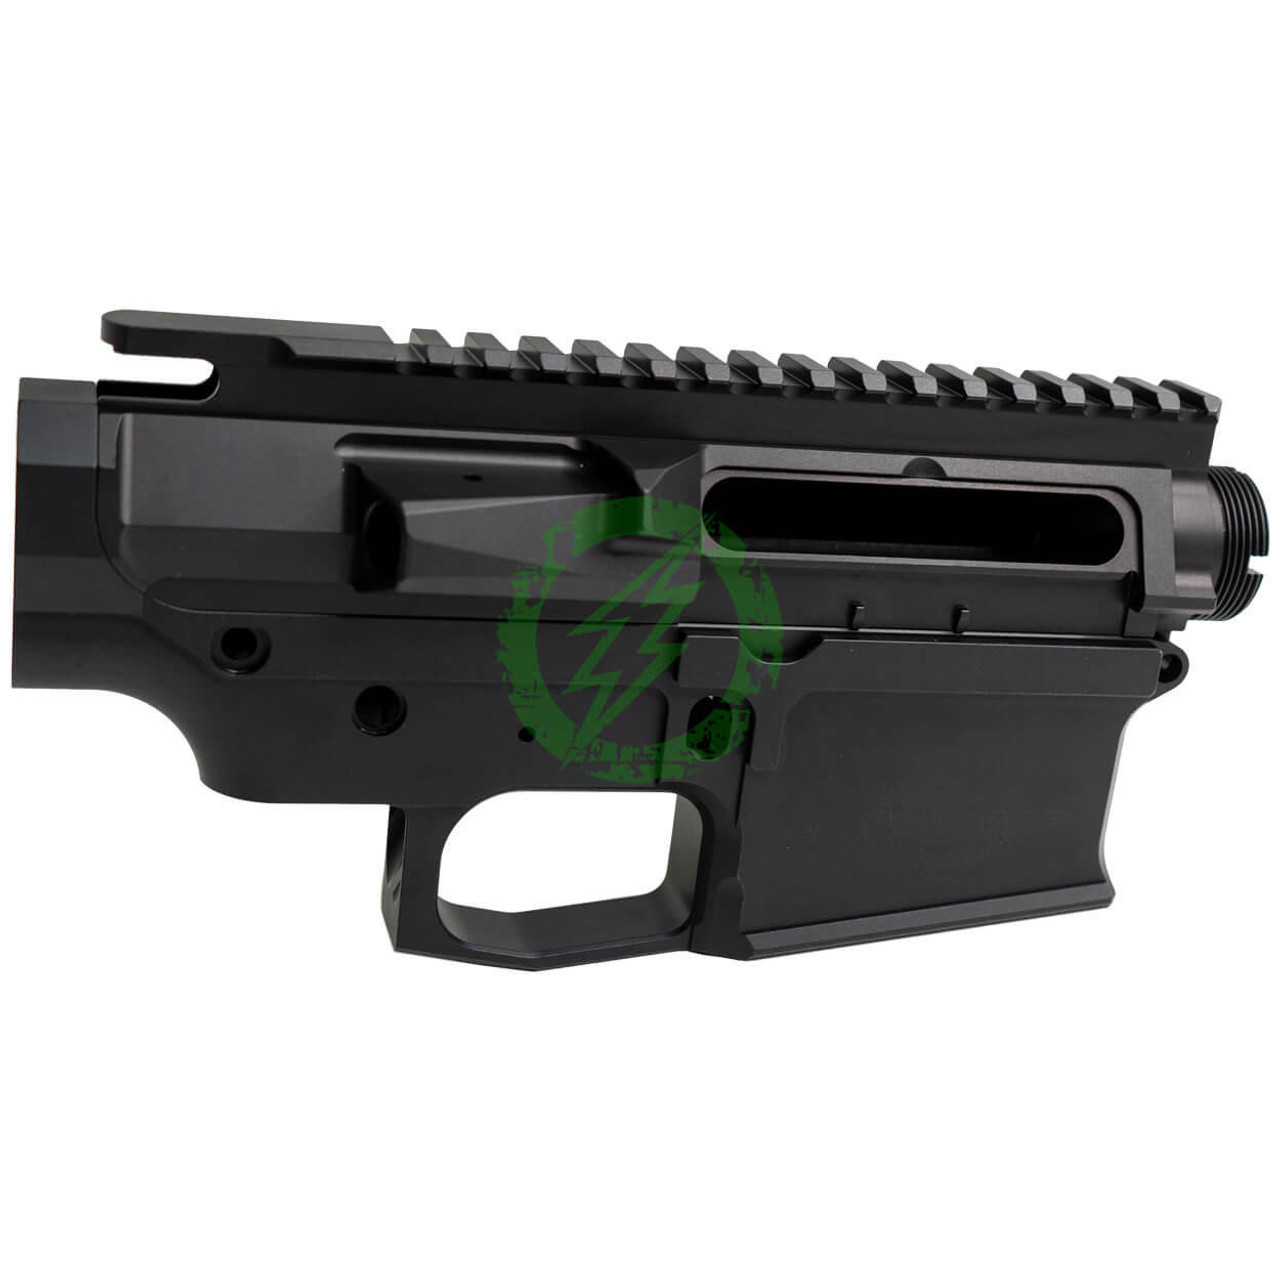 RETRO Arms Retro Arms CNC Receiver for SR25 | Black 